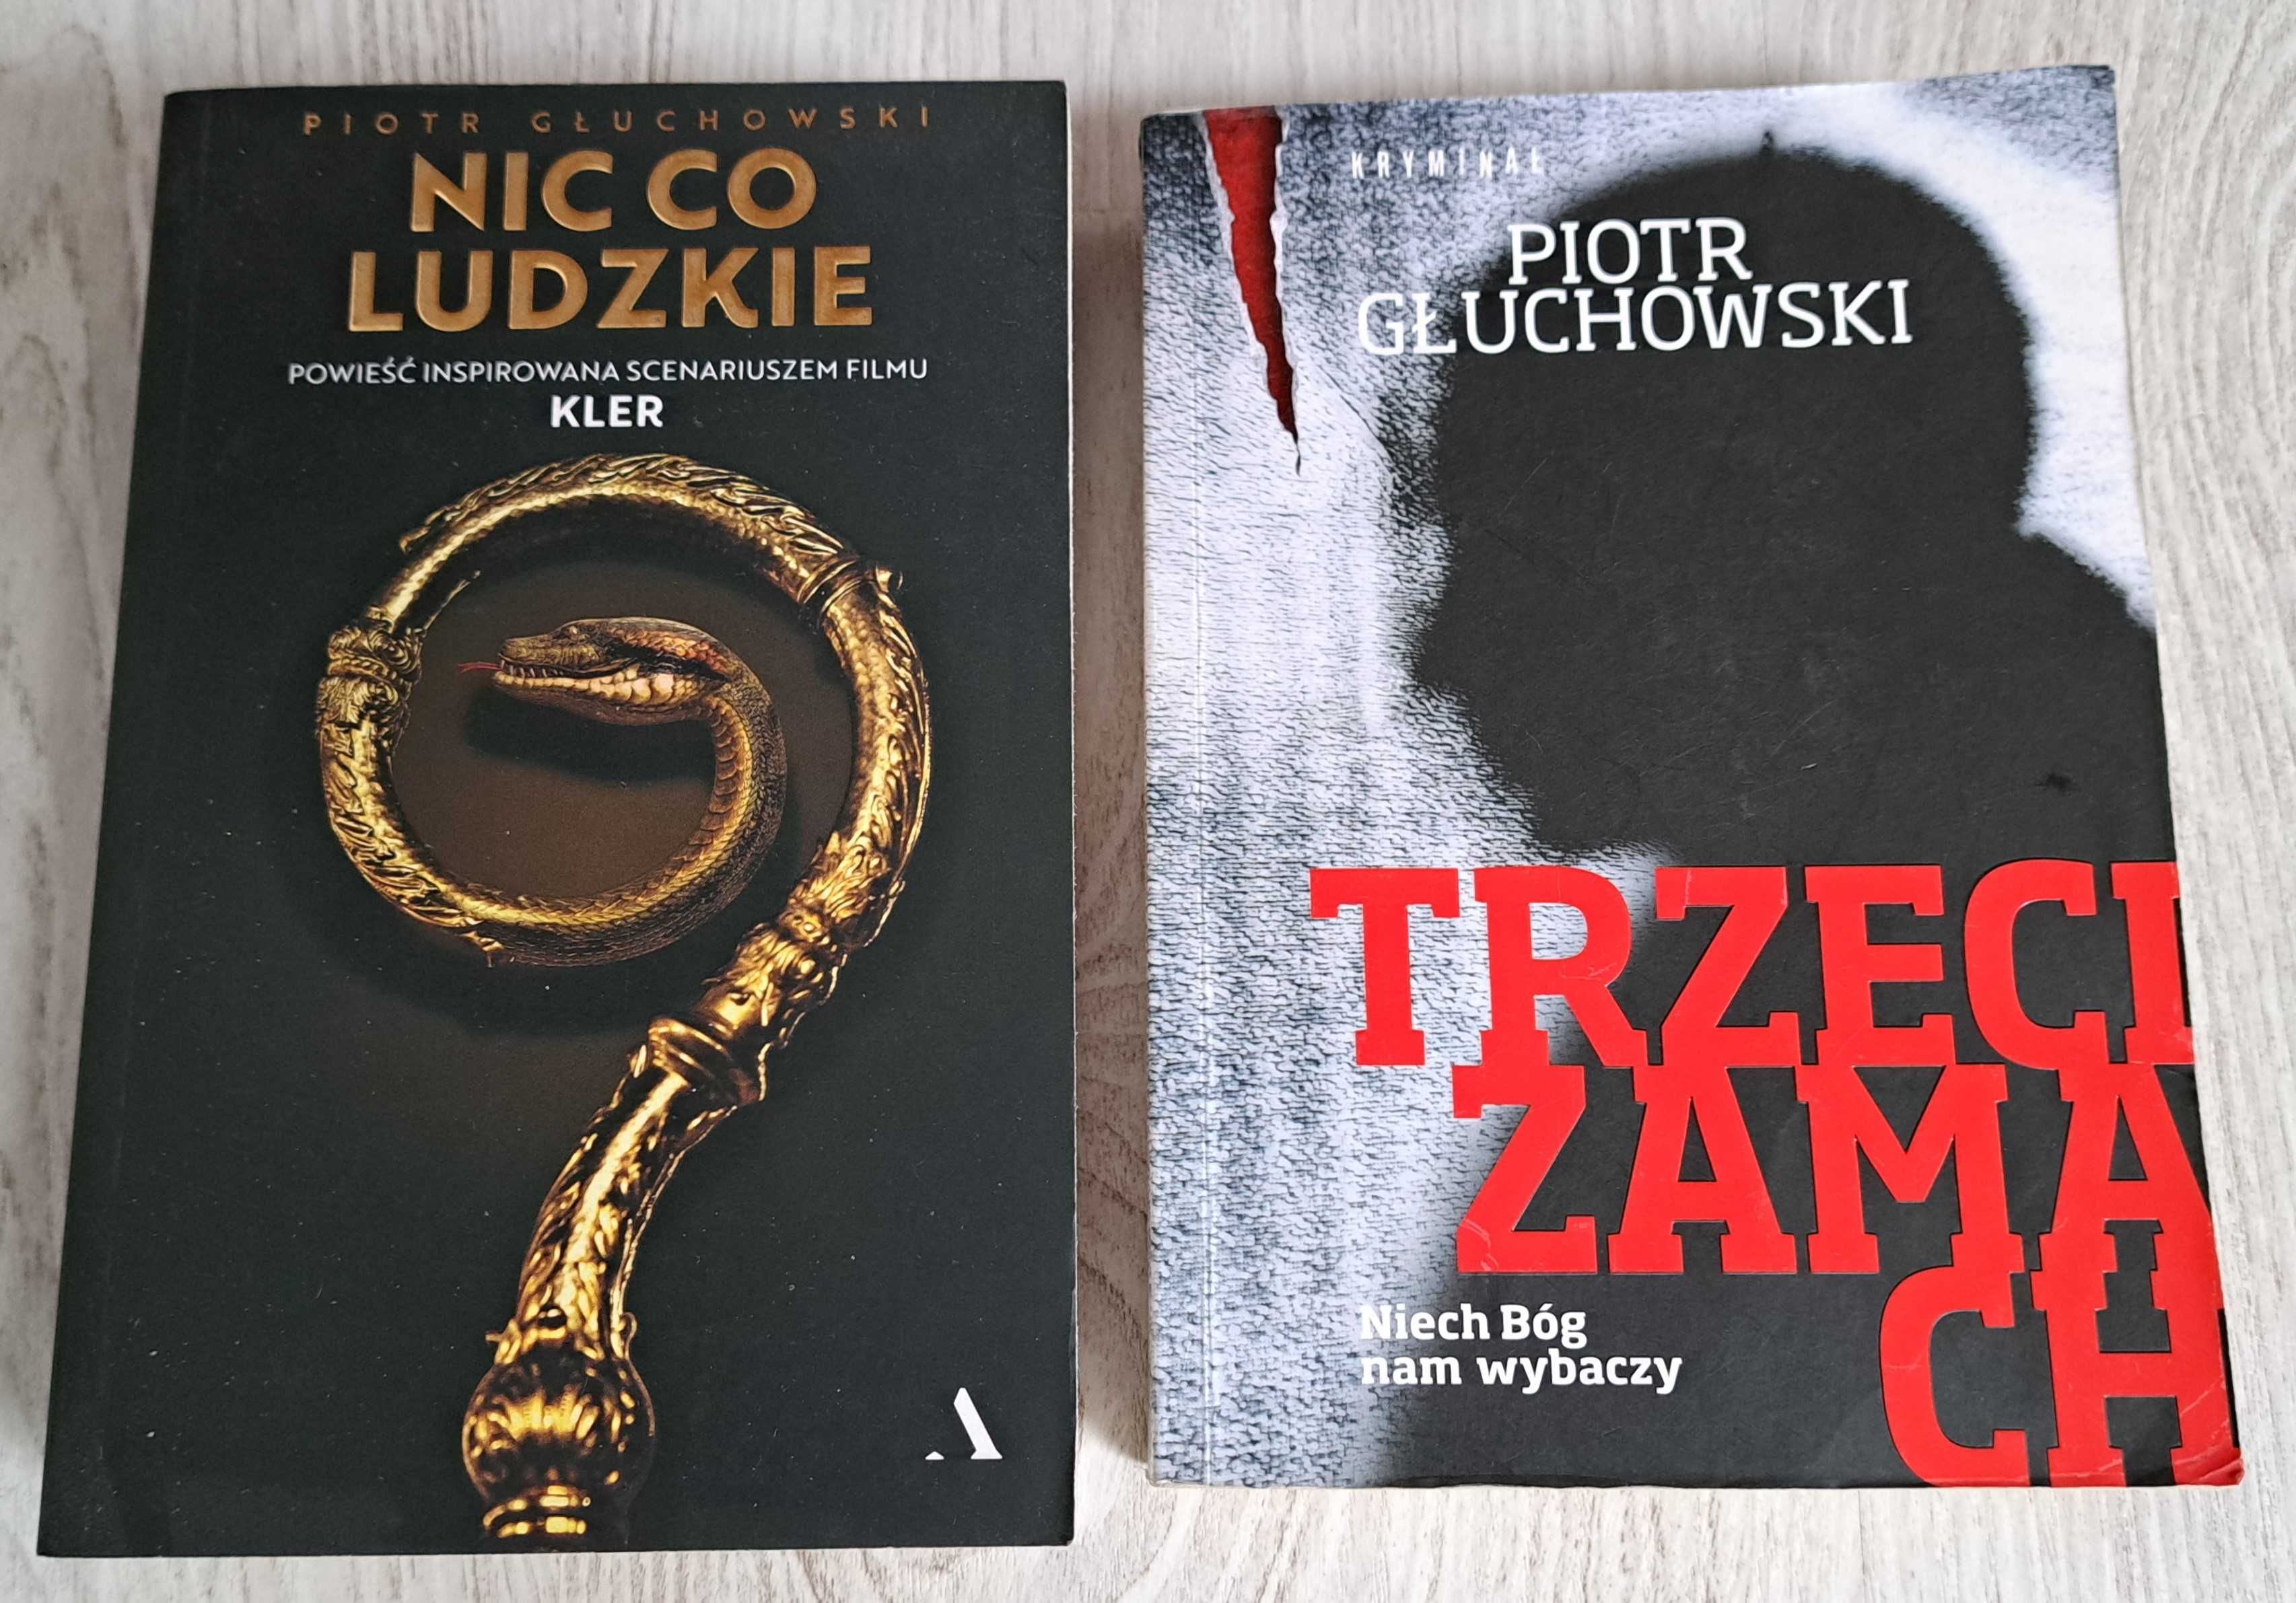 2x Piotr Głuchowski Nic co ludzkie   KLER    bdb + Trzeci zamach